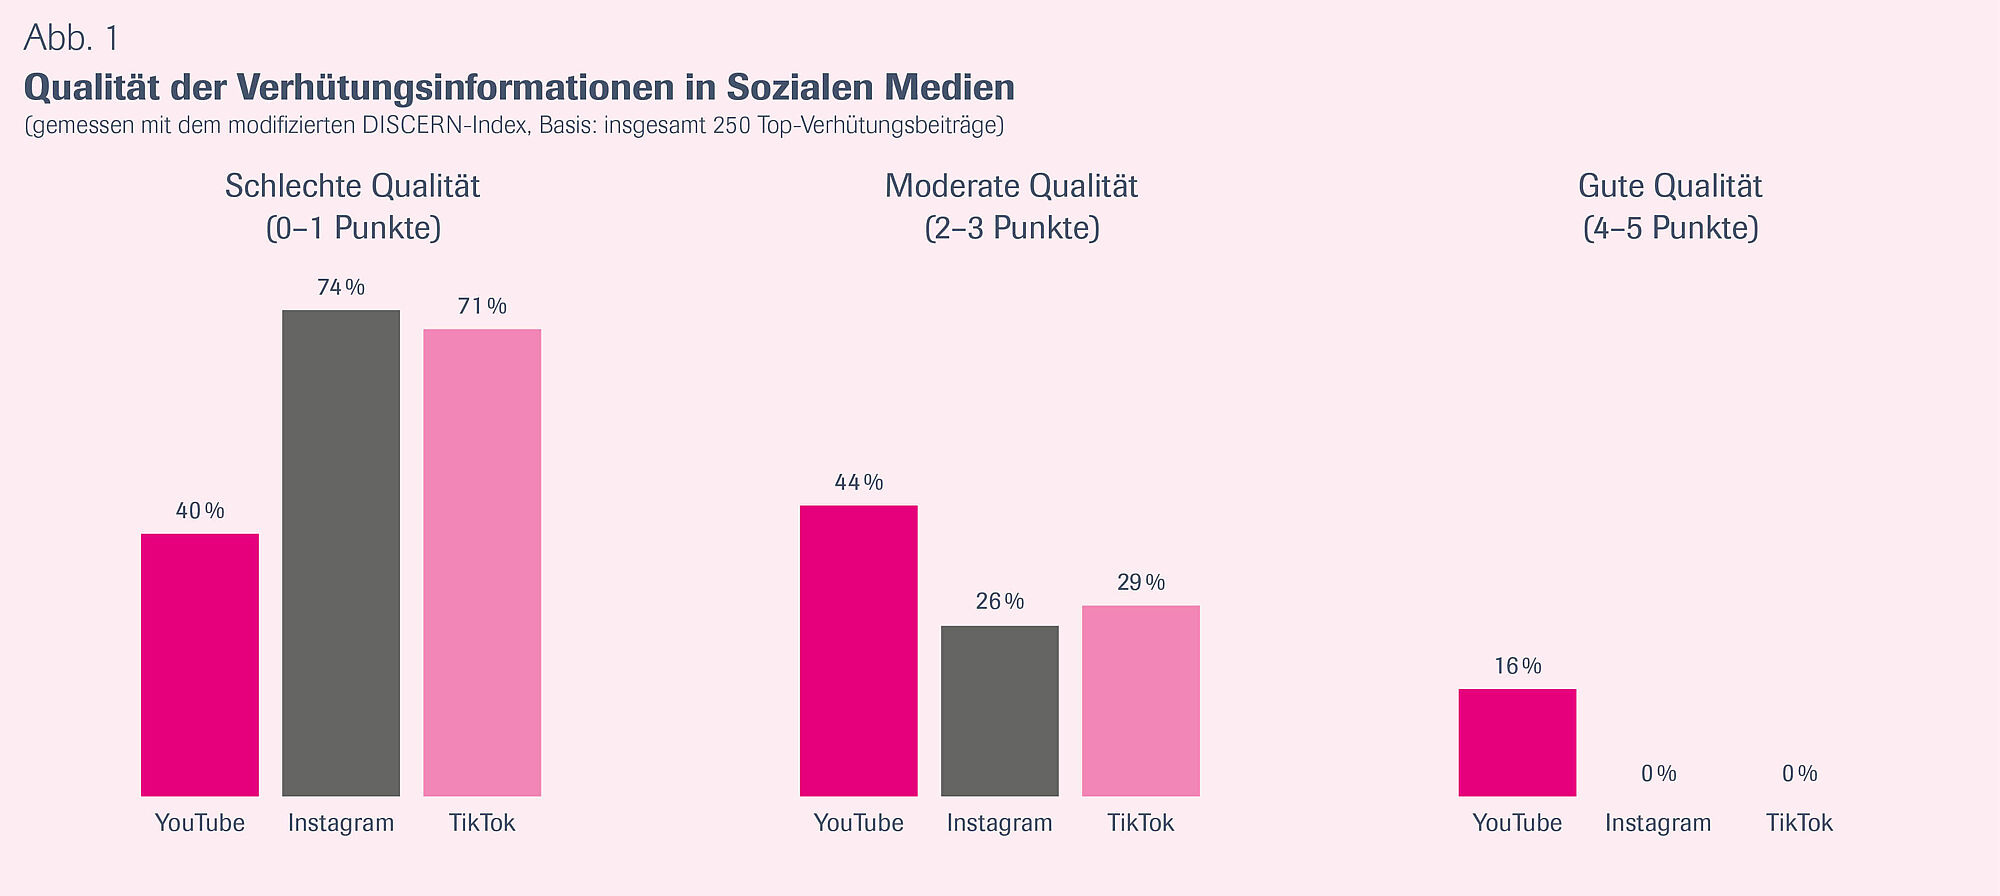 Abbildung 1 zeigt in Form eines gruppierten Säulendiagramms die prozentuale Verteilung schlechter, moderater und guter Qualität von Verhütungsinformationen auf YouTube, Instagram und TikTok.